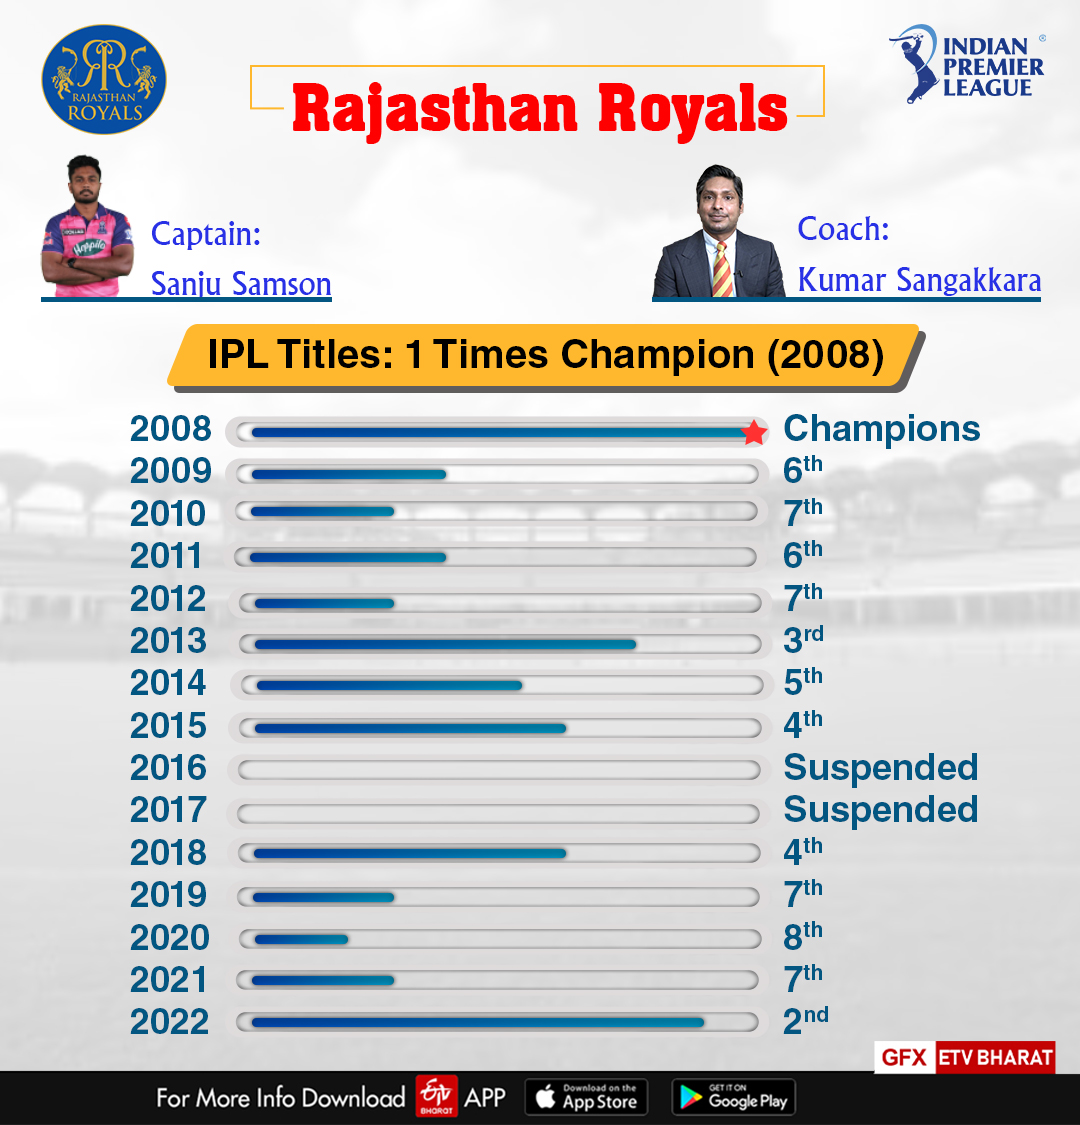 RR in IPL